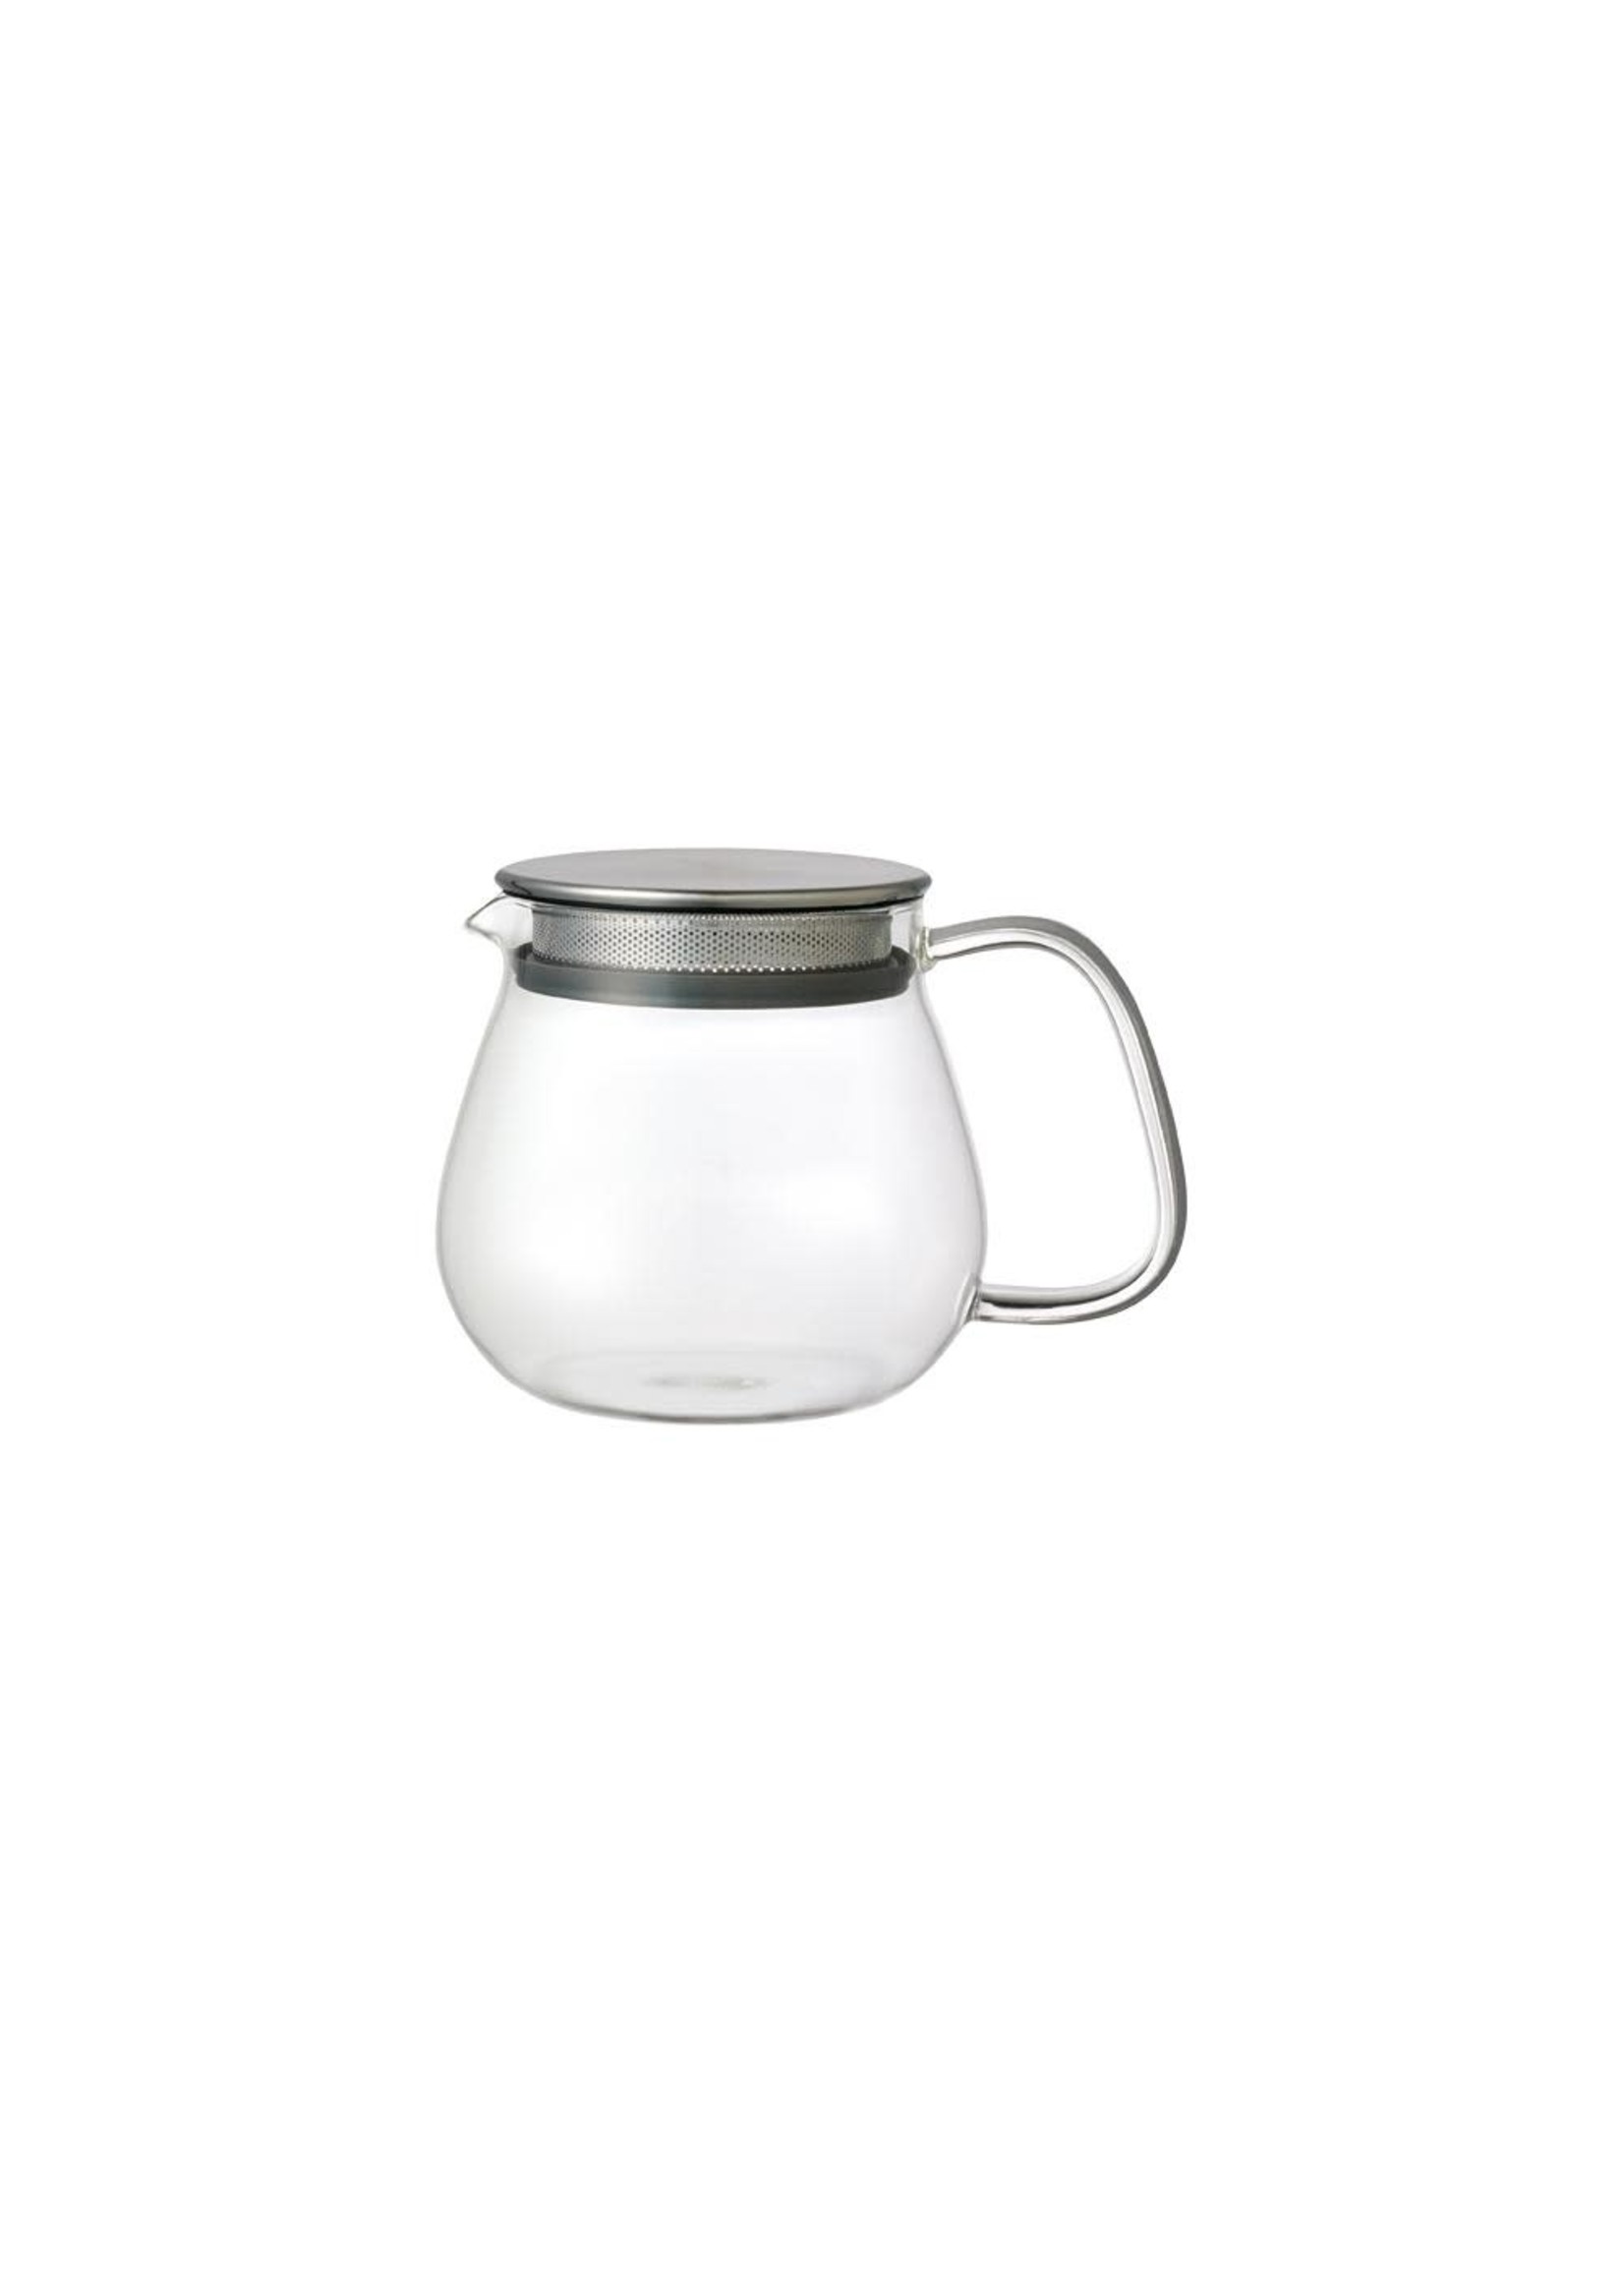 UNITEA one touch tea pot - 460 ml